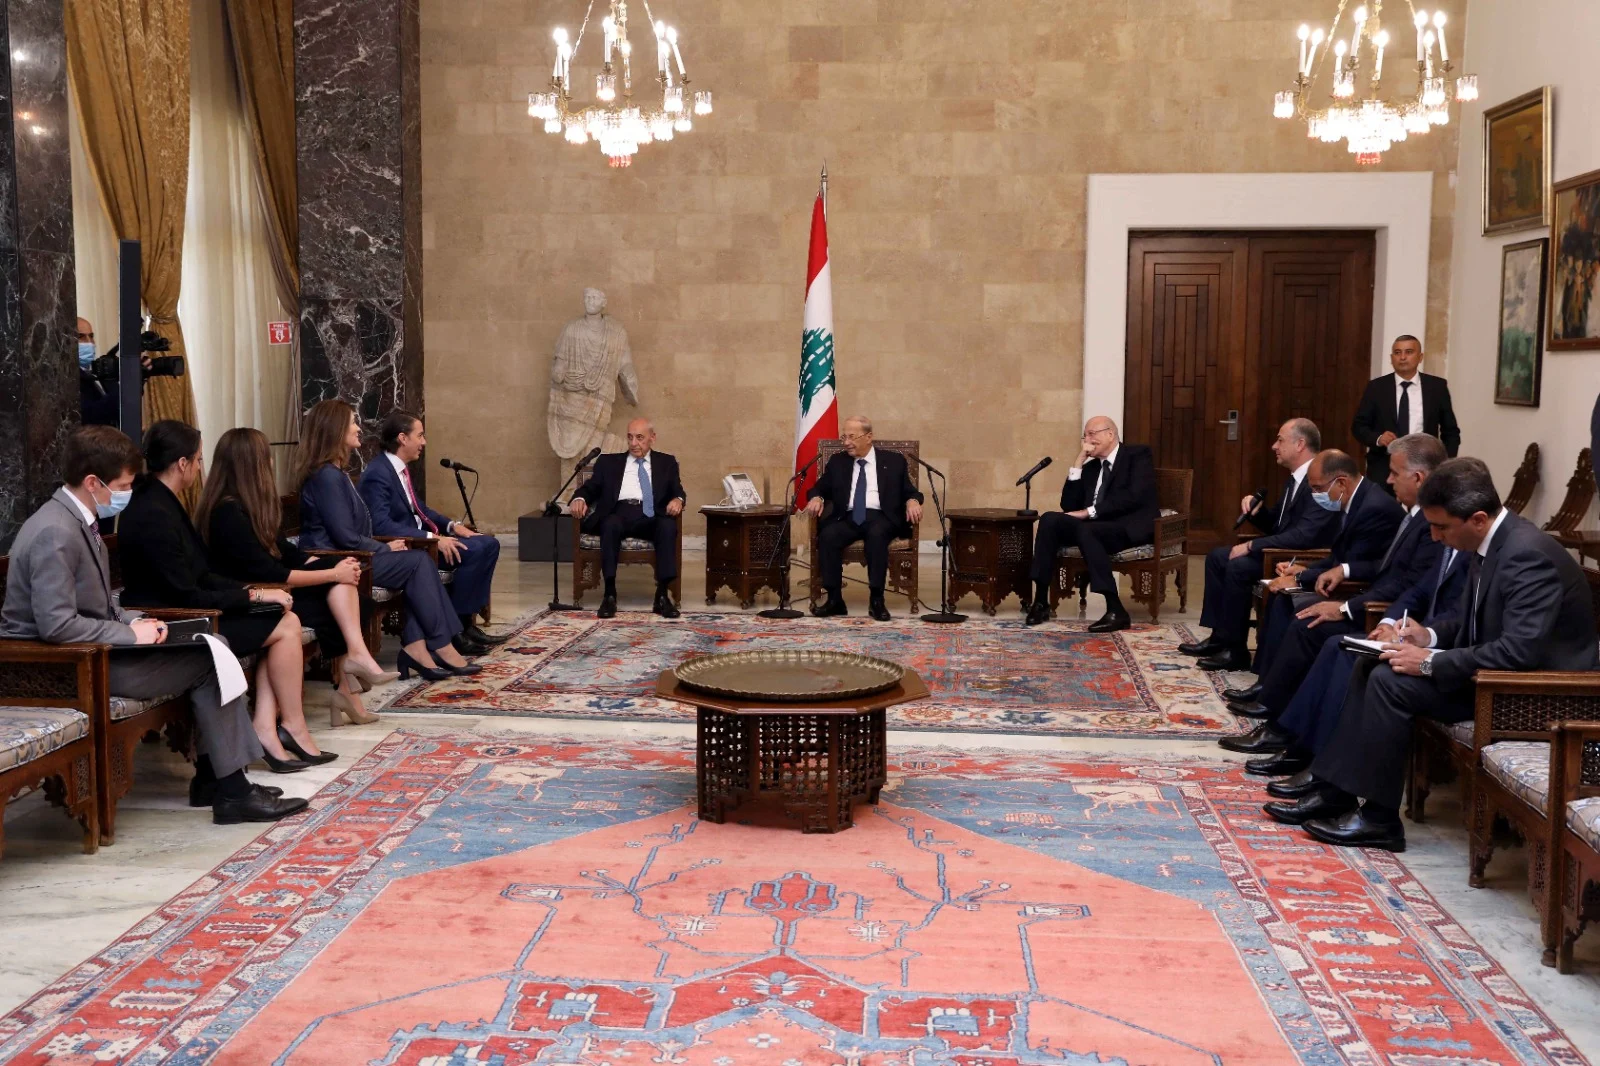 עמוס הוכשטיין יחד עם נשיא לבנון, ראש הממשלה ויו''ר הפרלמנט בשיח על מו''מ הגבול הימי